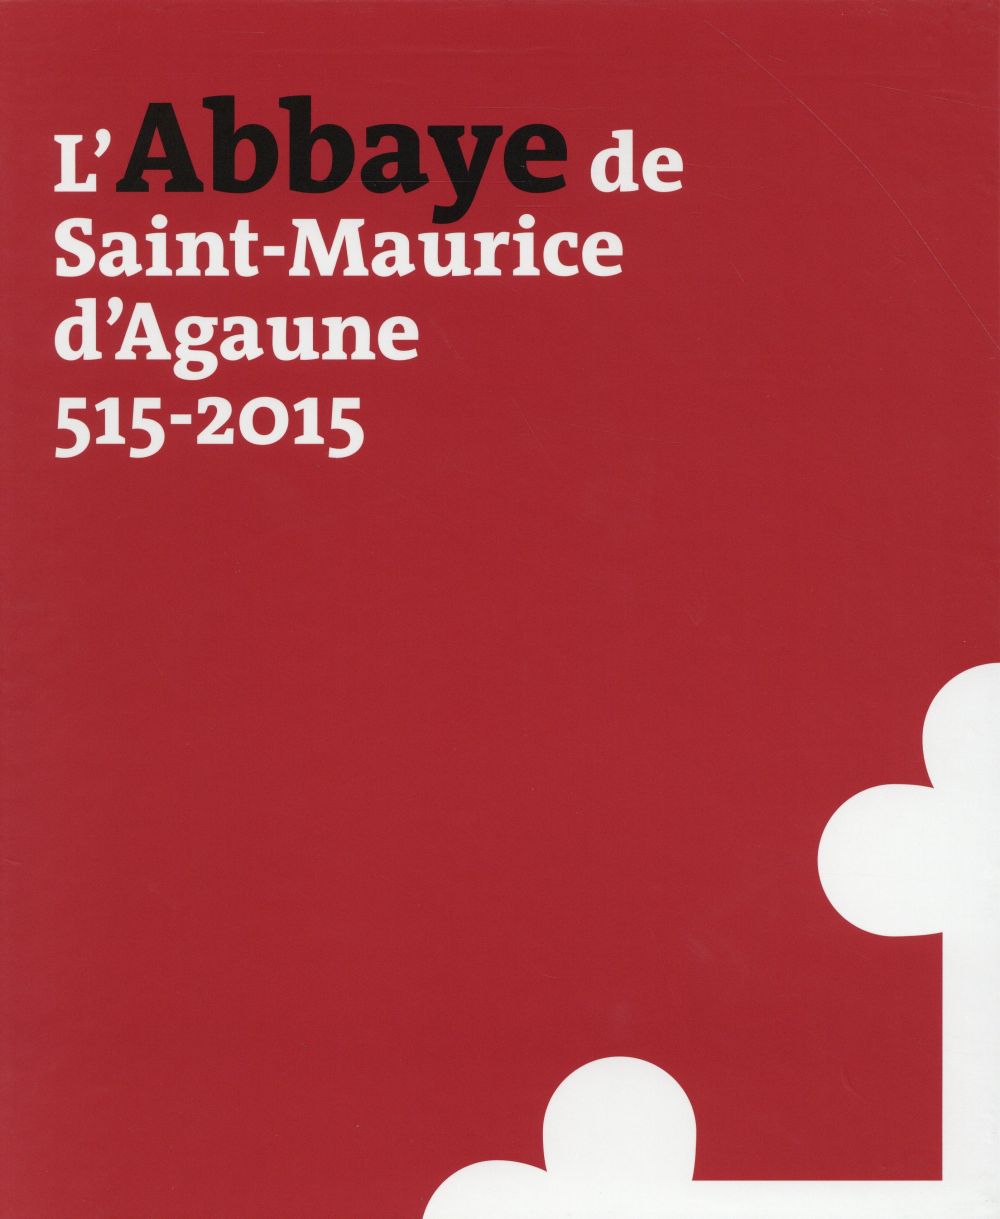 L'ABBAYE DE SAINT-MAURICE D'AGAUNE, 515-2015 - VOL 1 HISTOIRE ET ARCHEOLOGIE - VOL 2 LE TRESOR